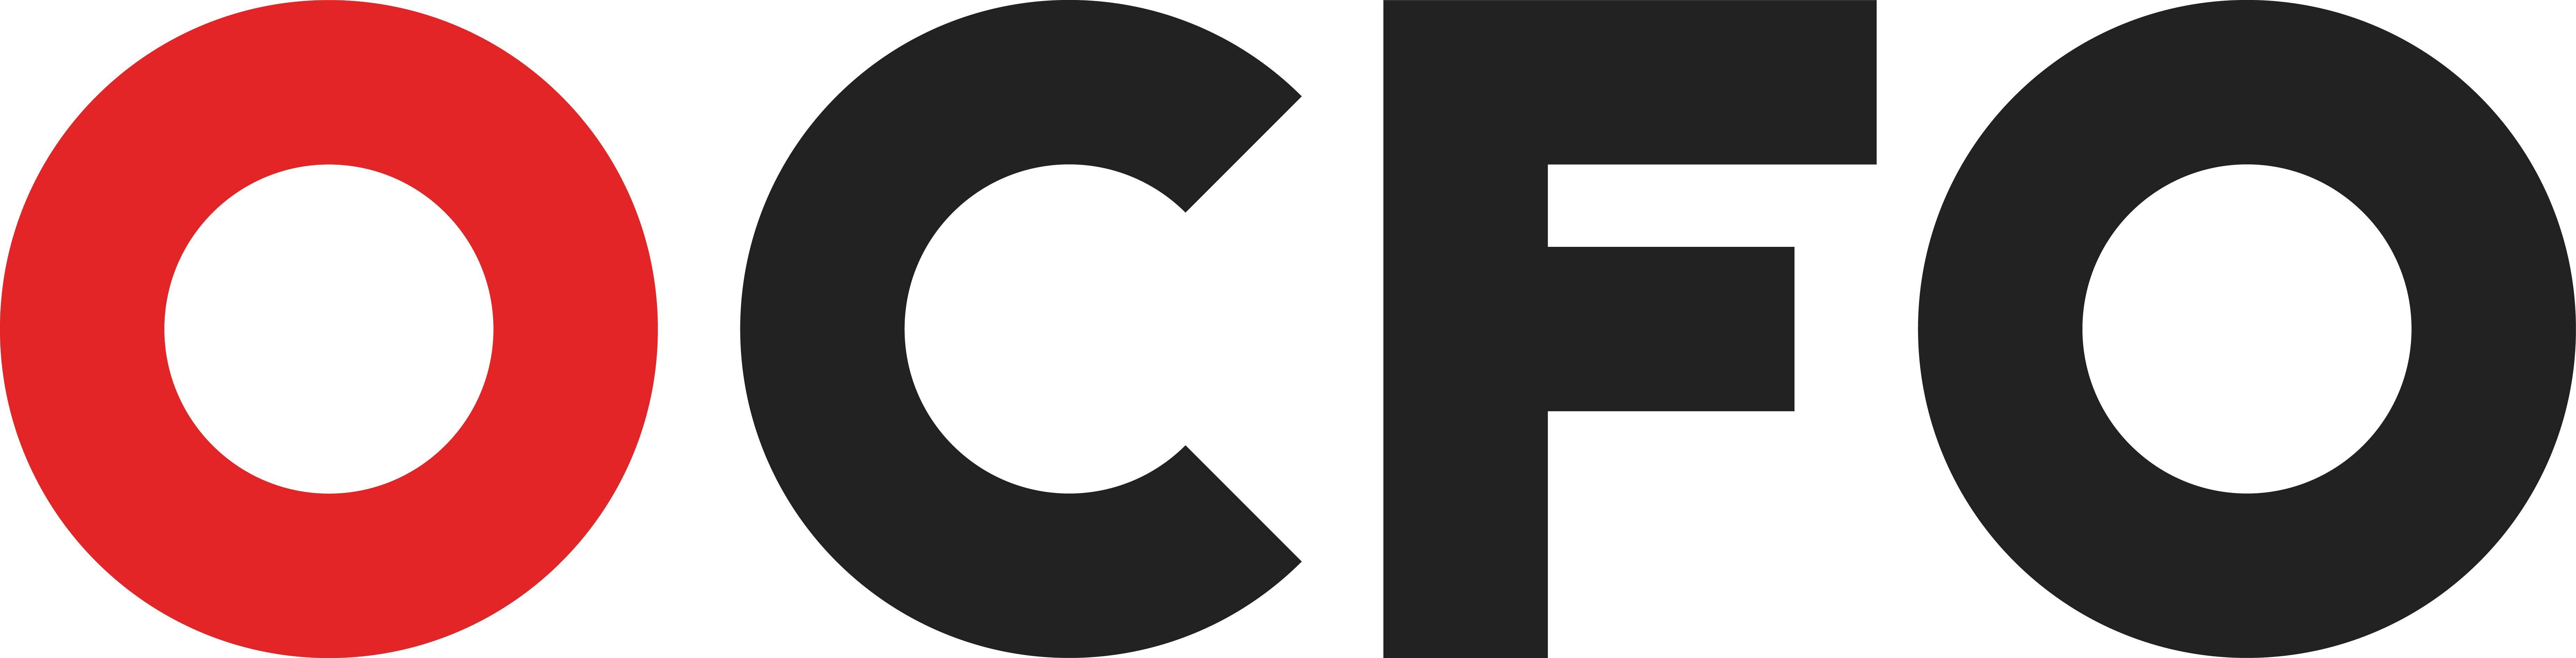 CFO Logo - Outsourced CFO Financial Management & Accounting, Financial ...